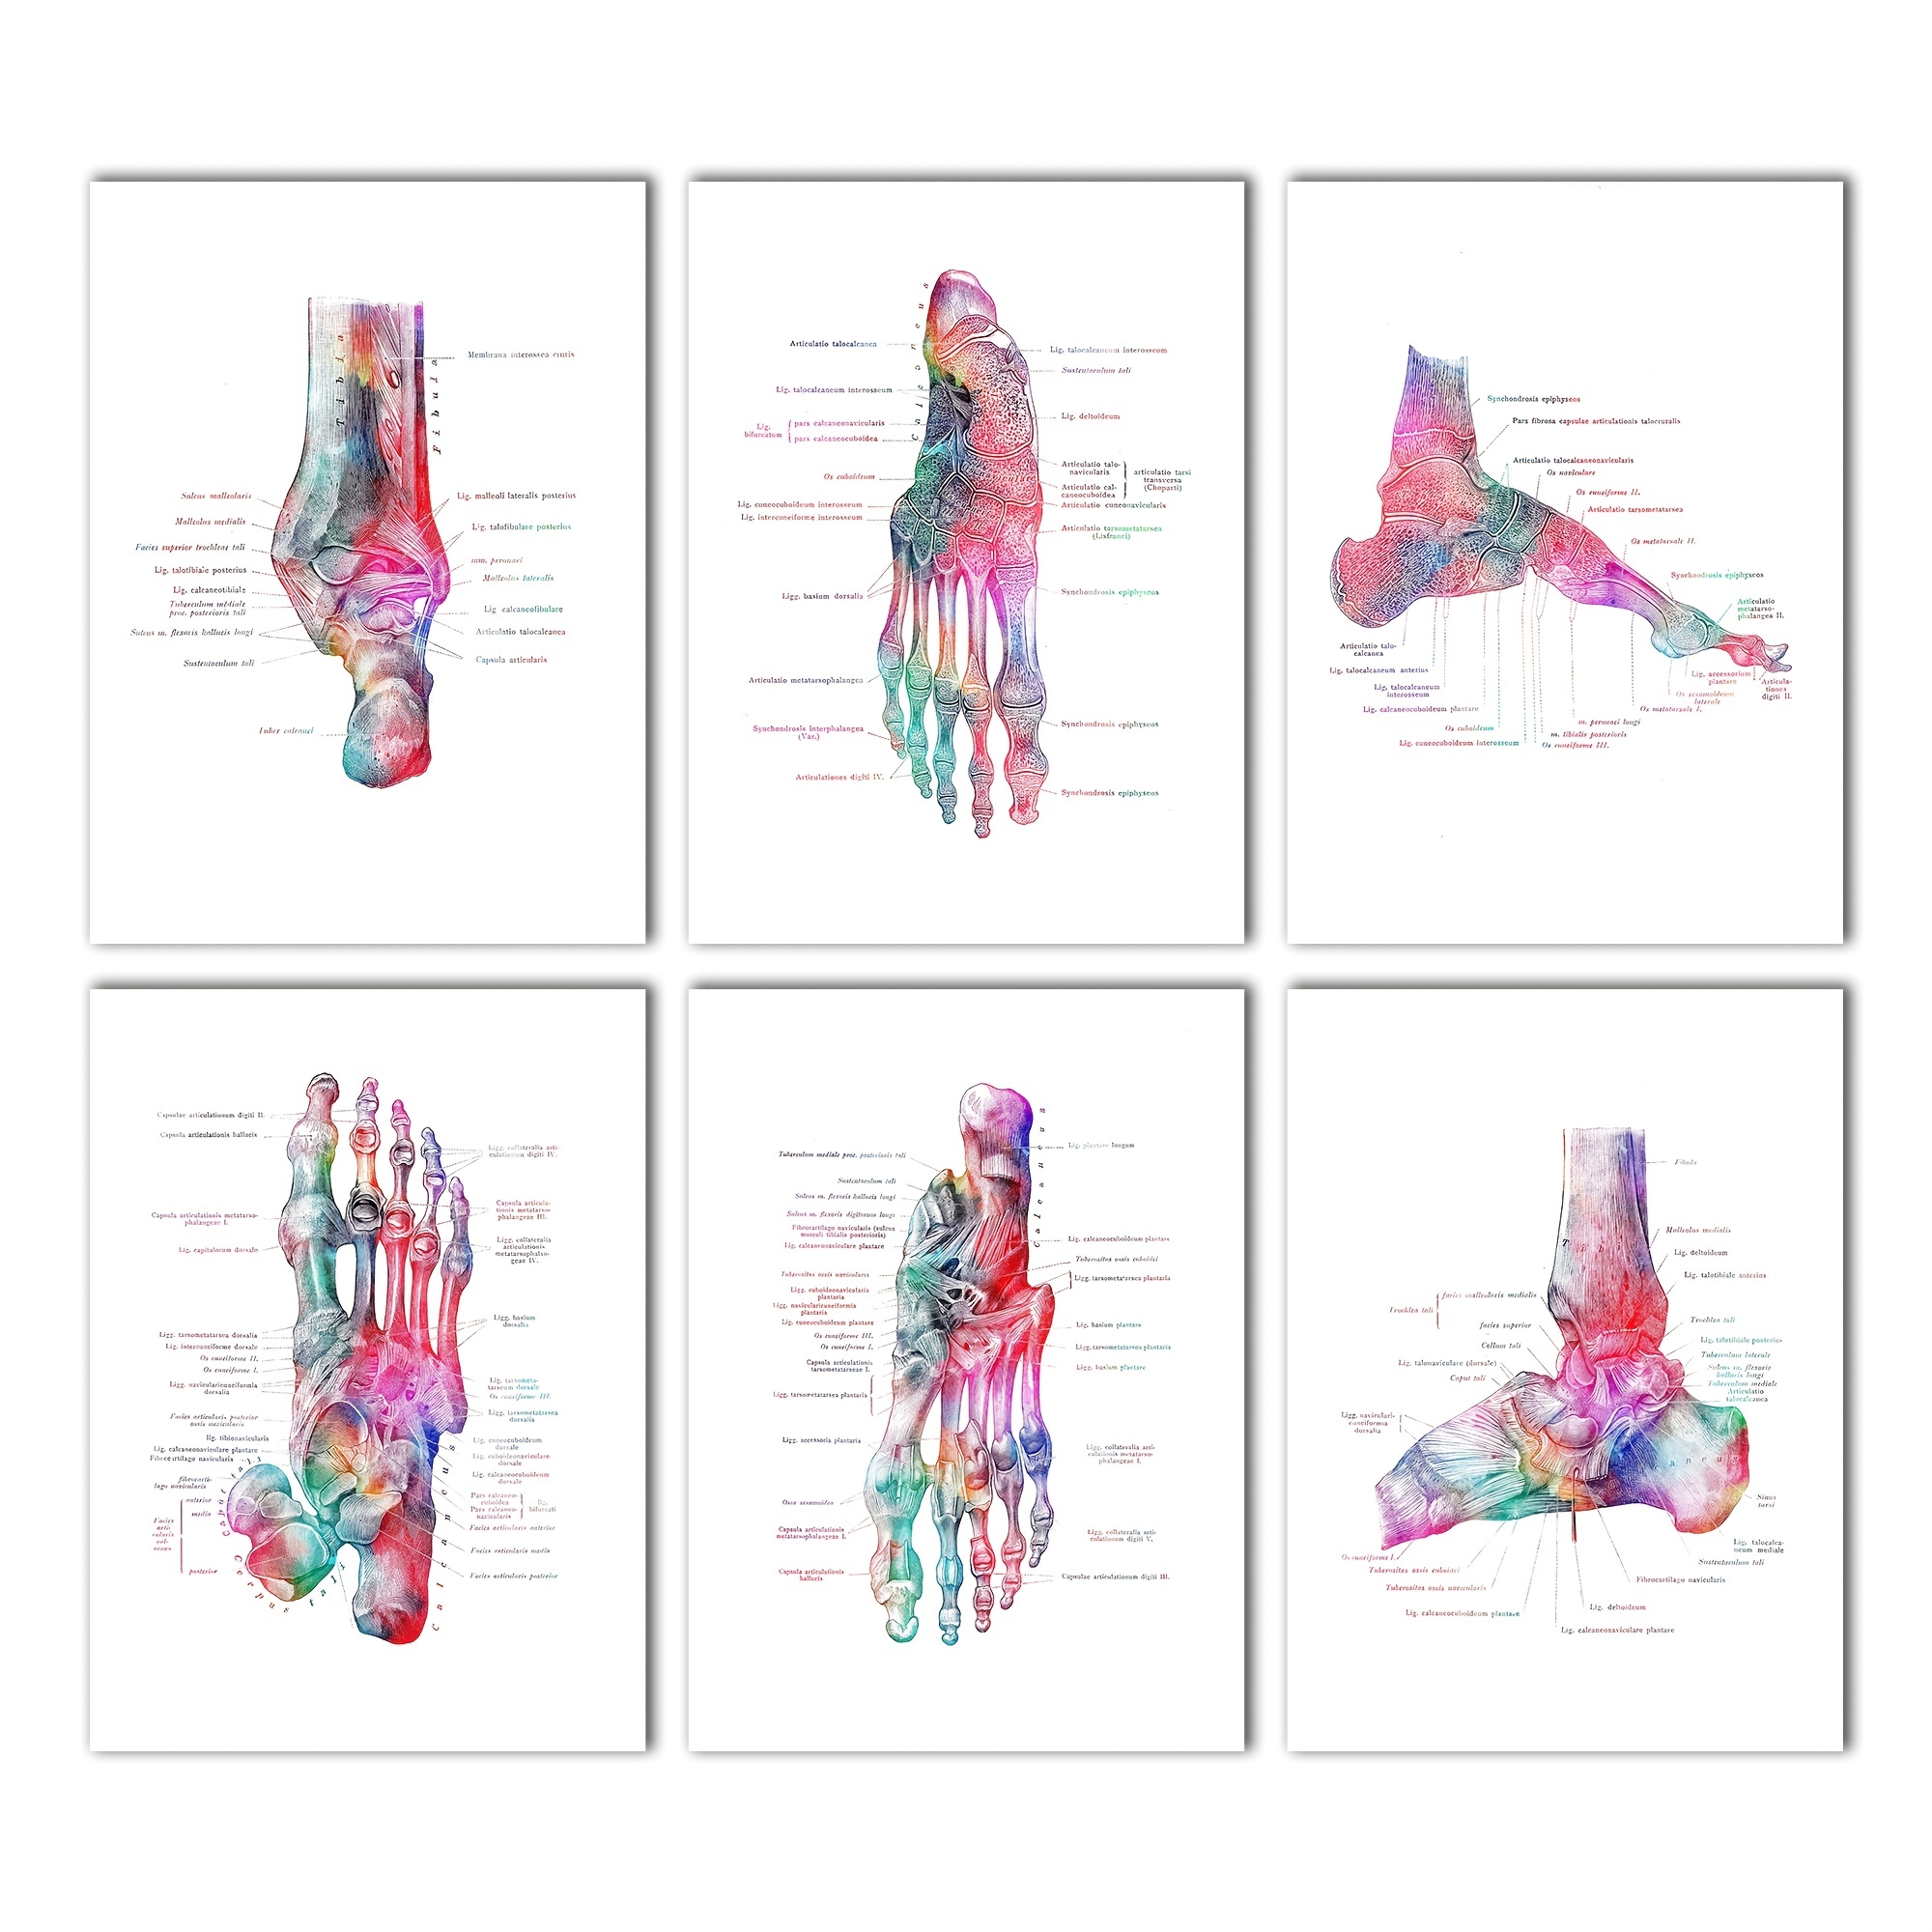 foot pattern printable